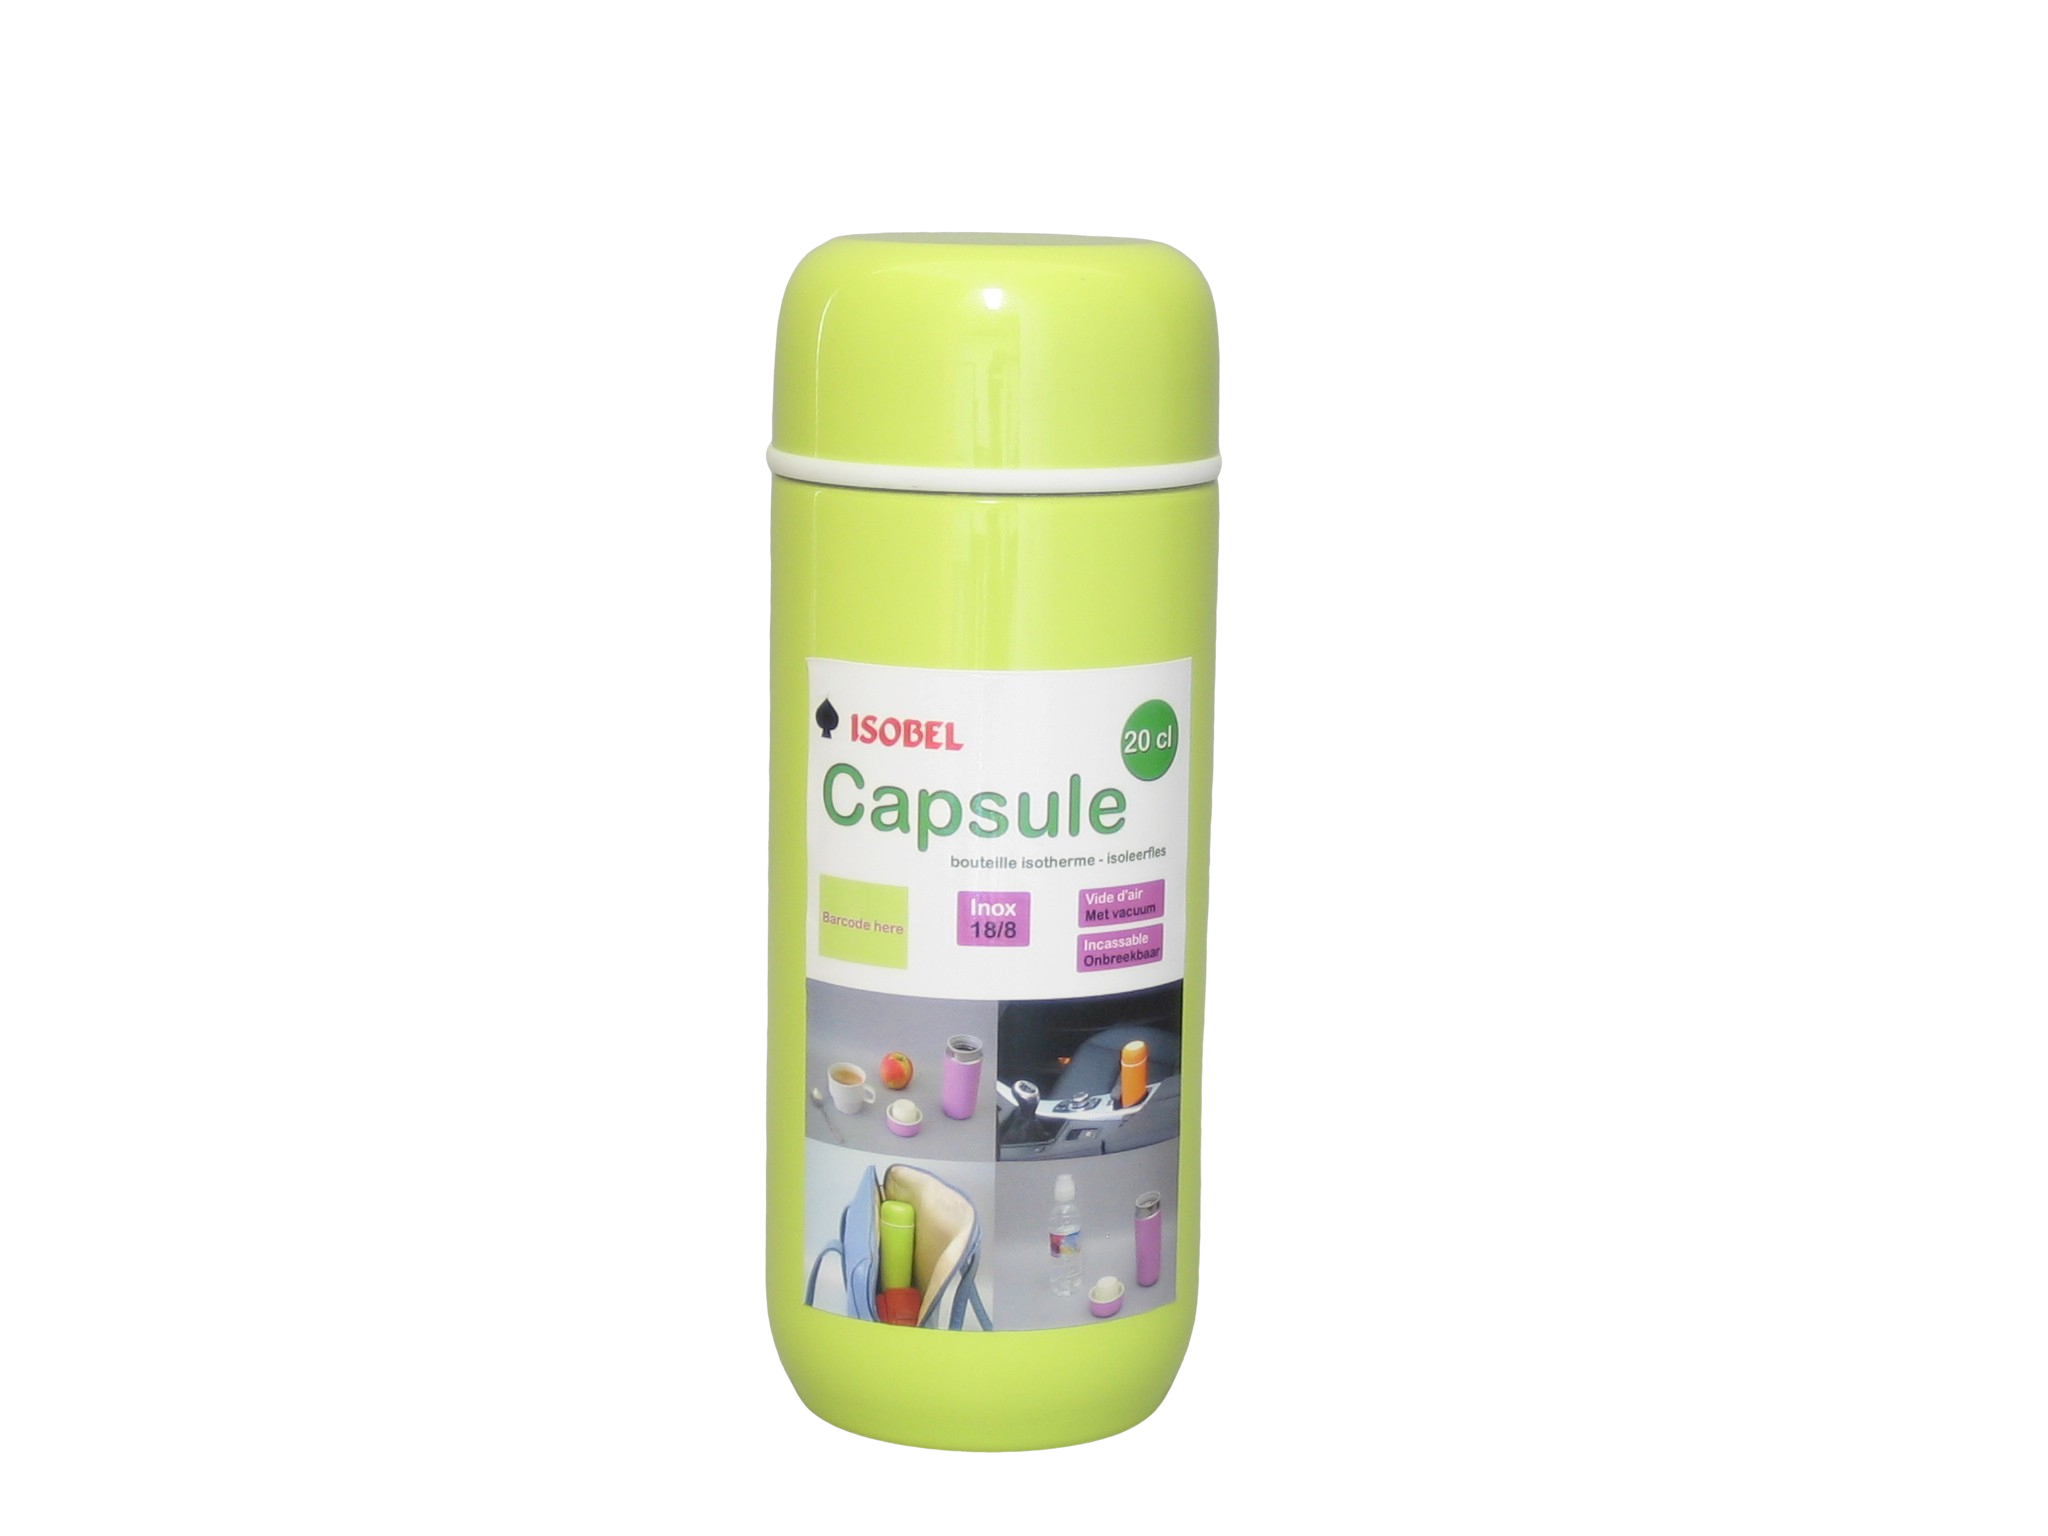 CAPSULE-033 - Isoleerfles inox onbreekbaar licht groen 0.20 L - Isobel